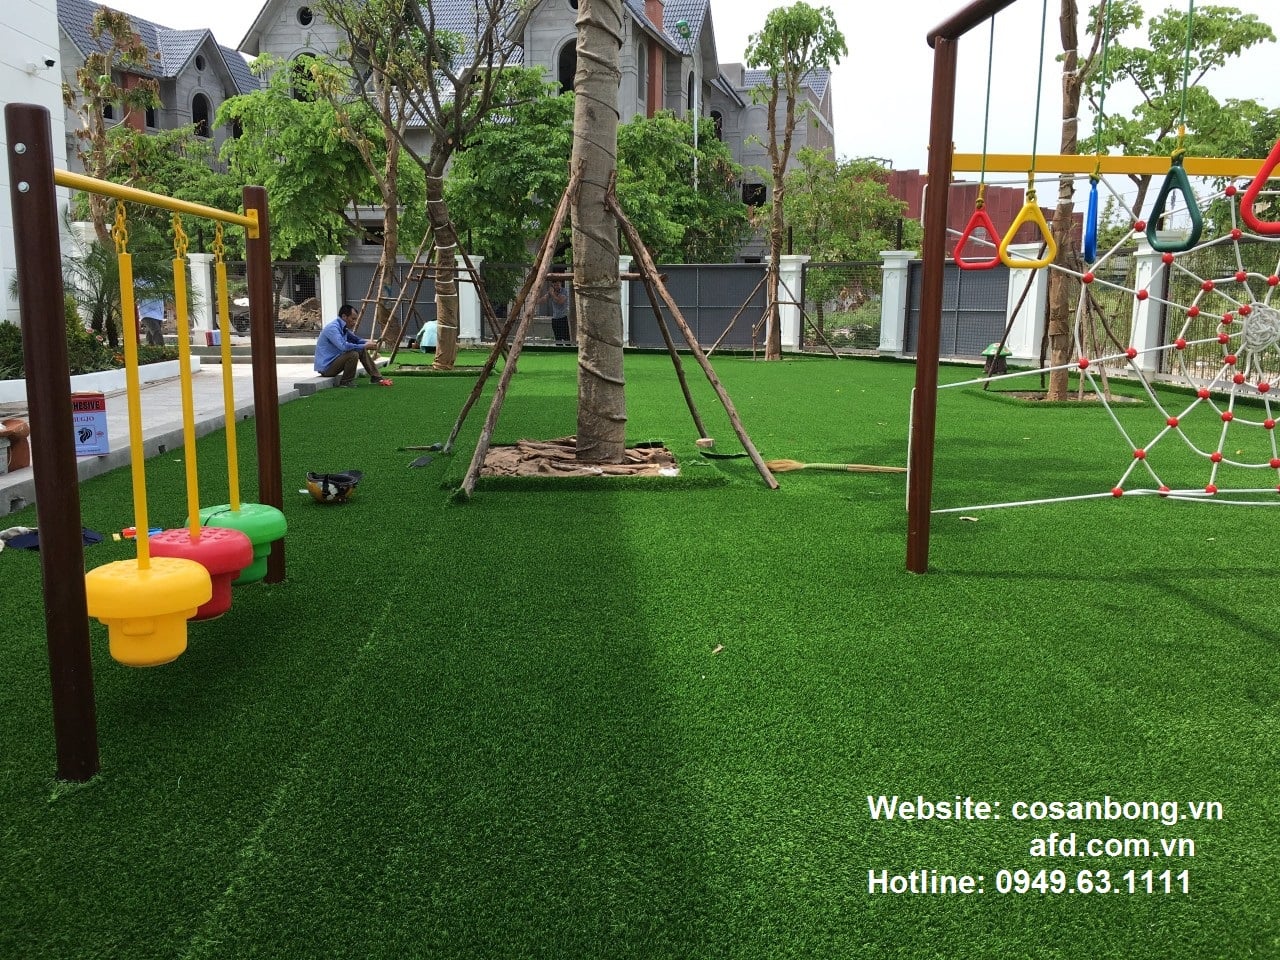 Các công trình cỏ nhân tạo sân vườn khu vui chơi chất lượng